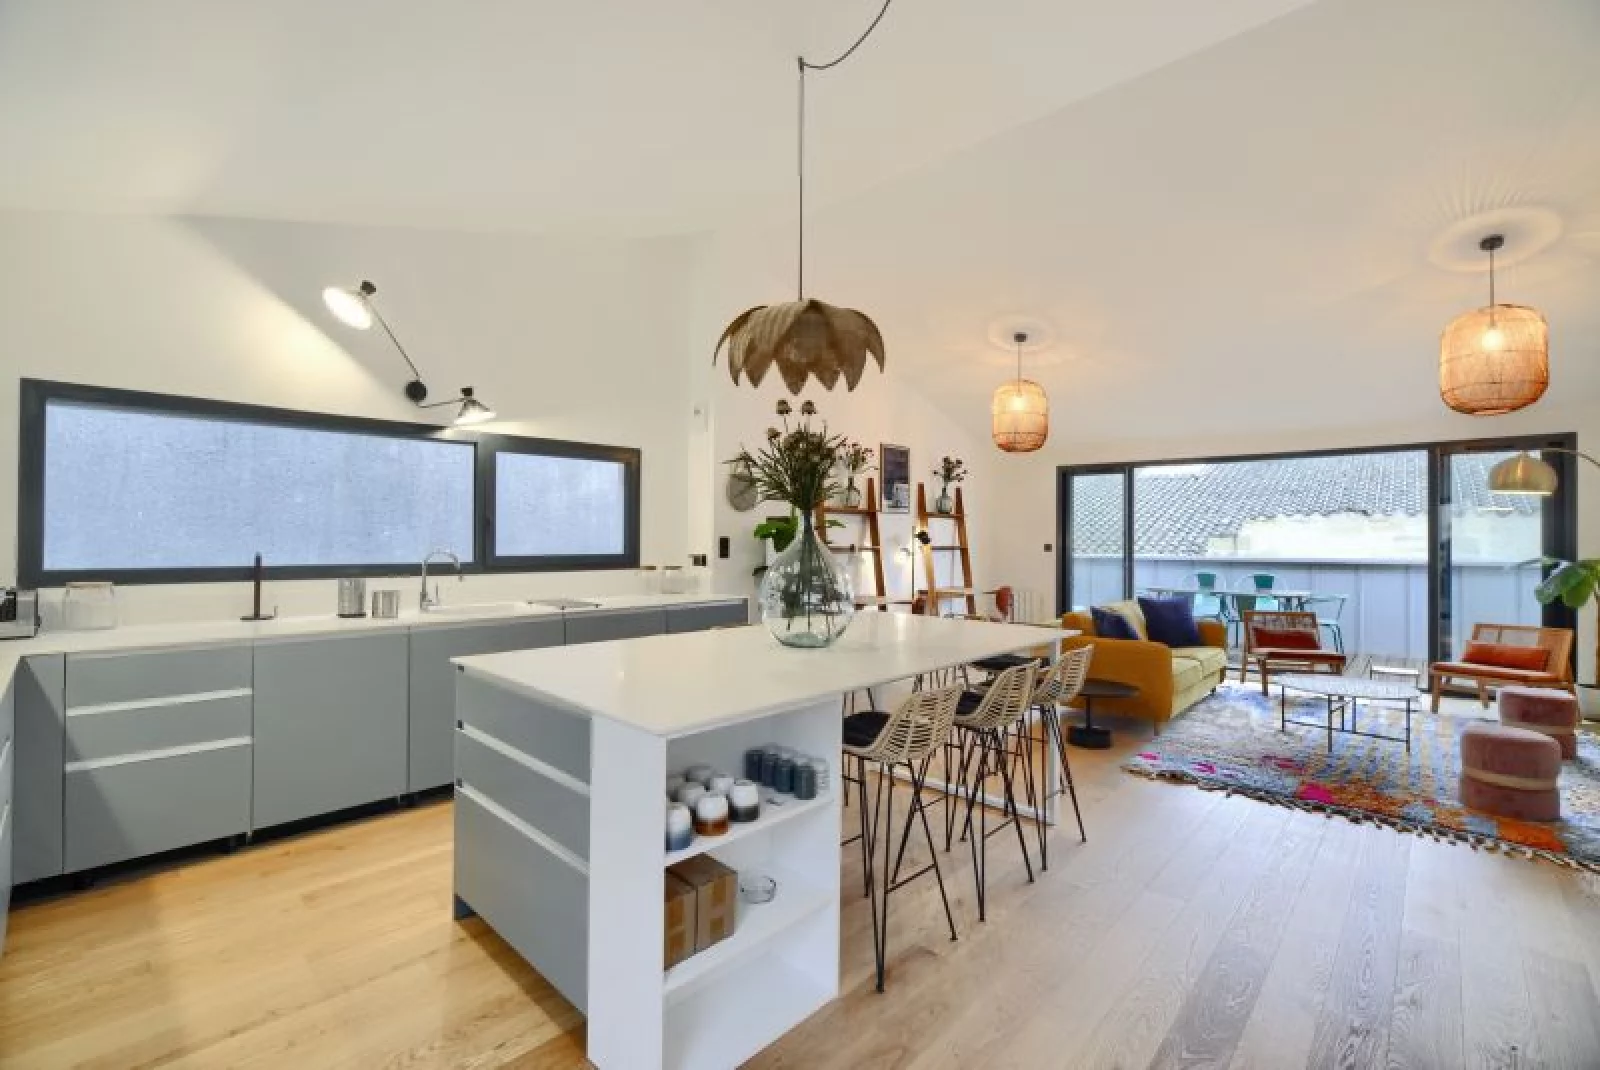 Location appartement duplex meublé 4 pièces de 110m² (Bordeaux - Chartrons)